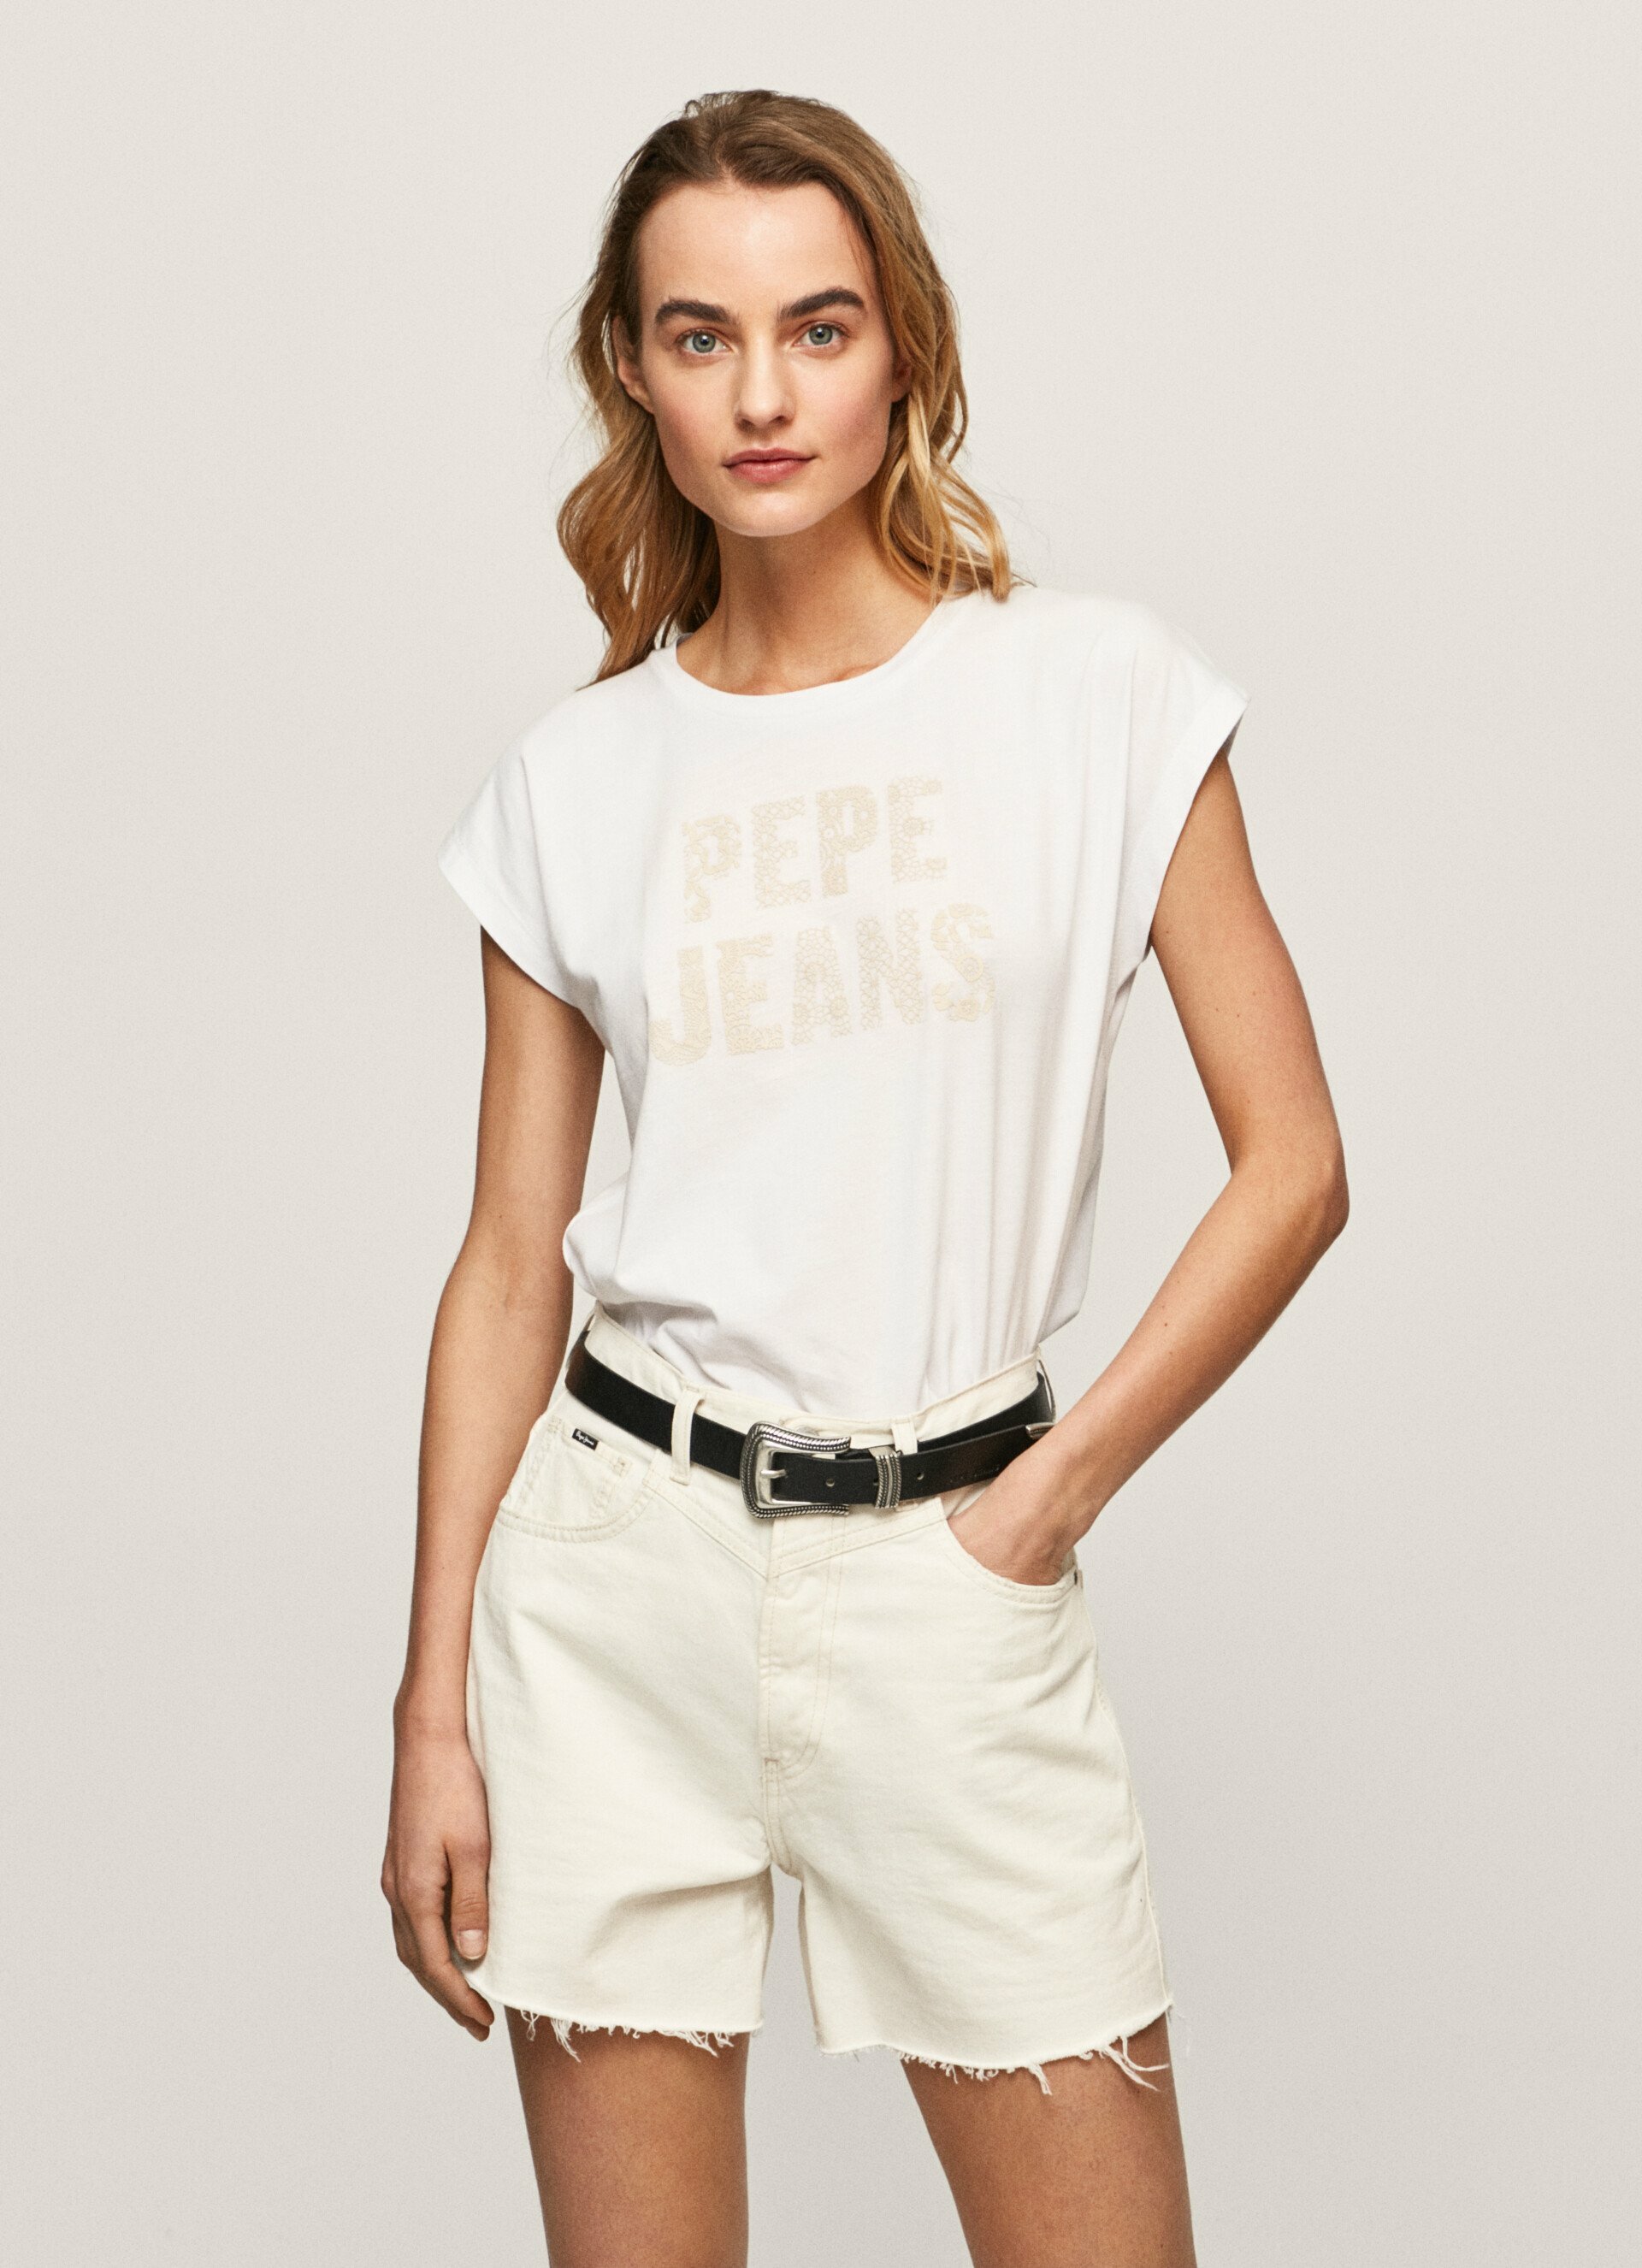 Pepe Jeans dámské bílé triko OLA s potiskem